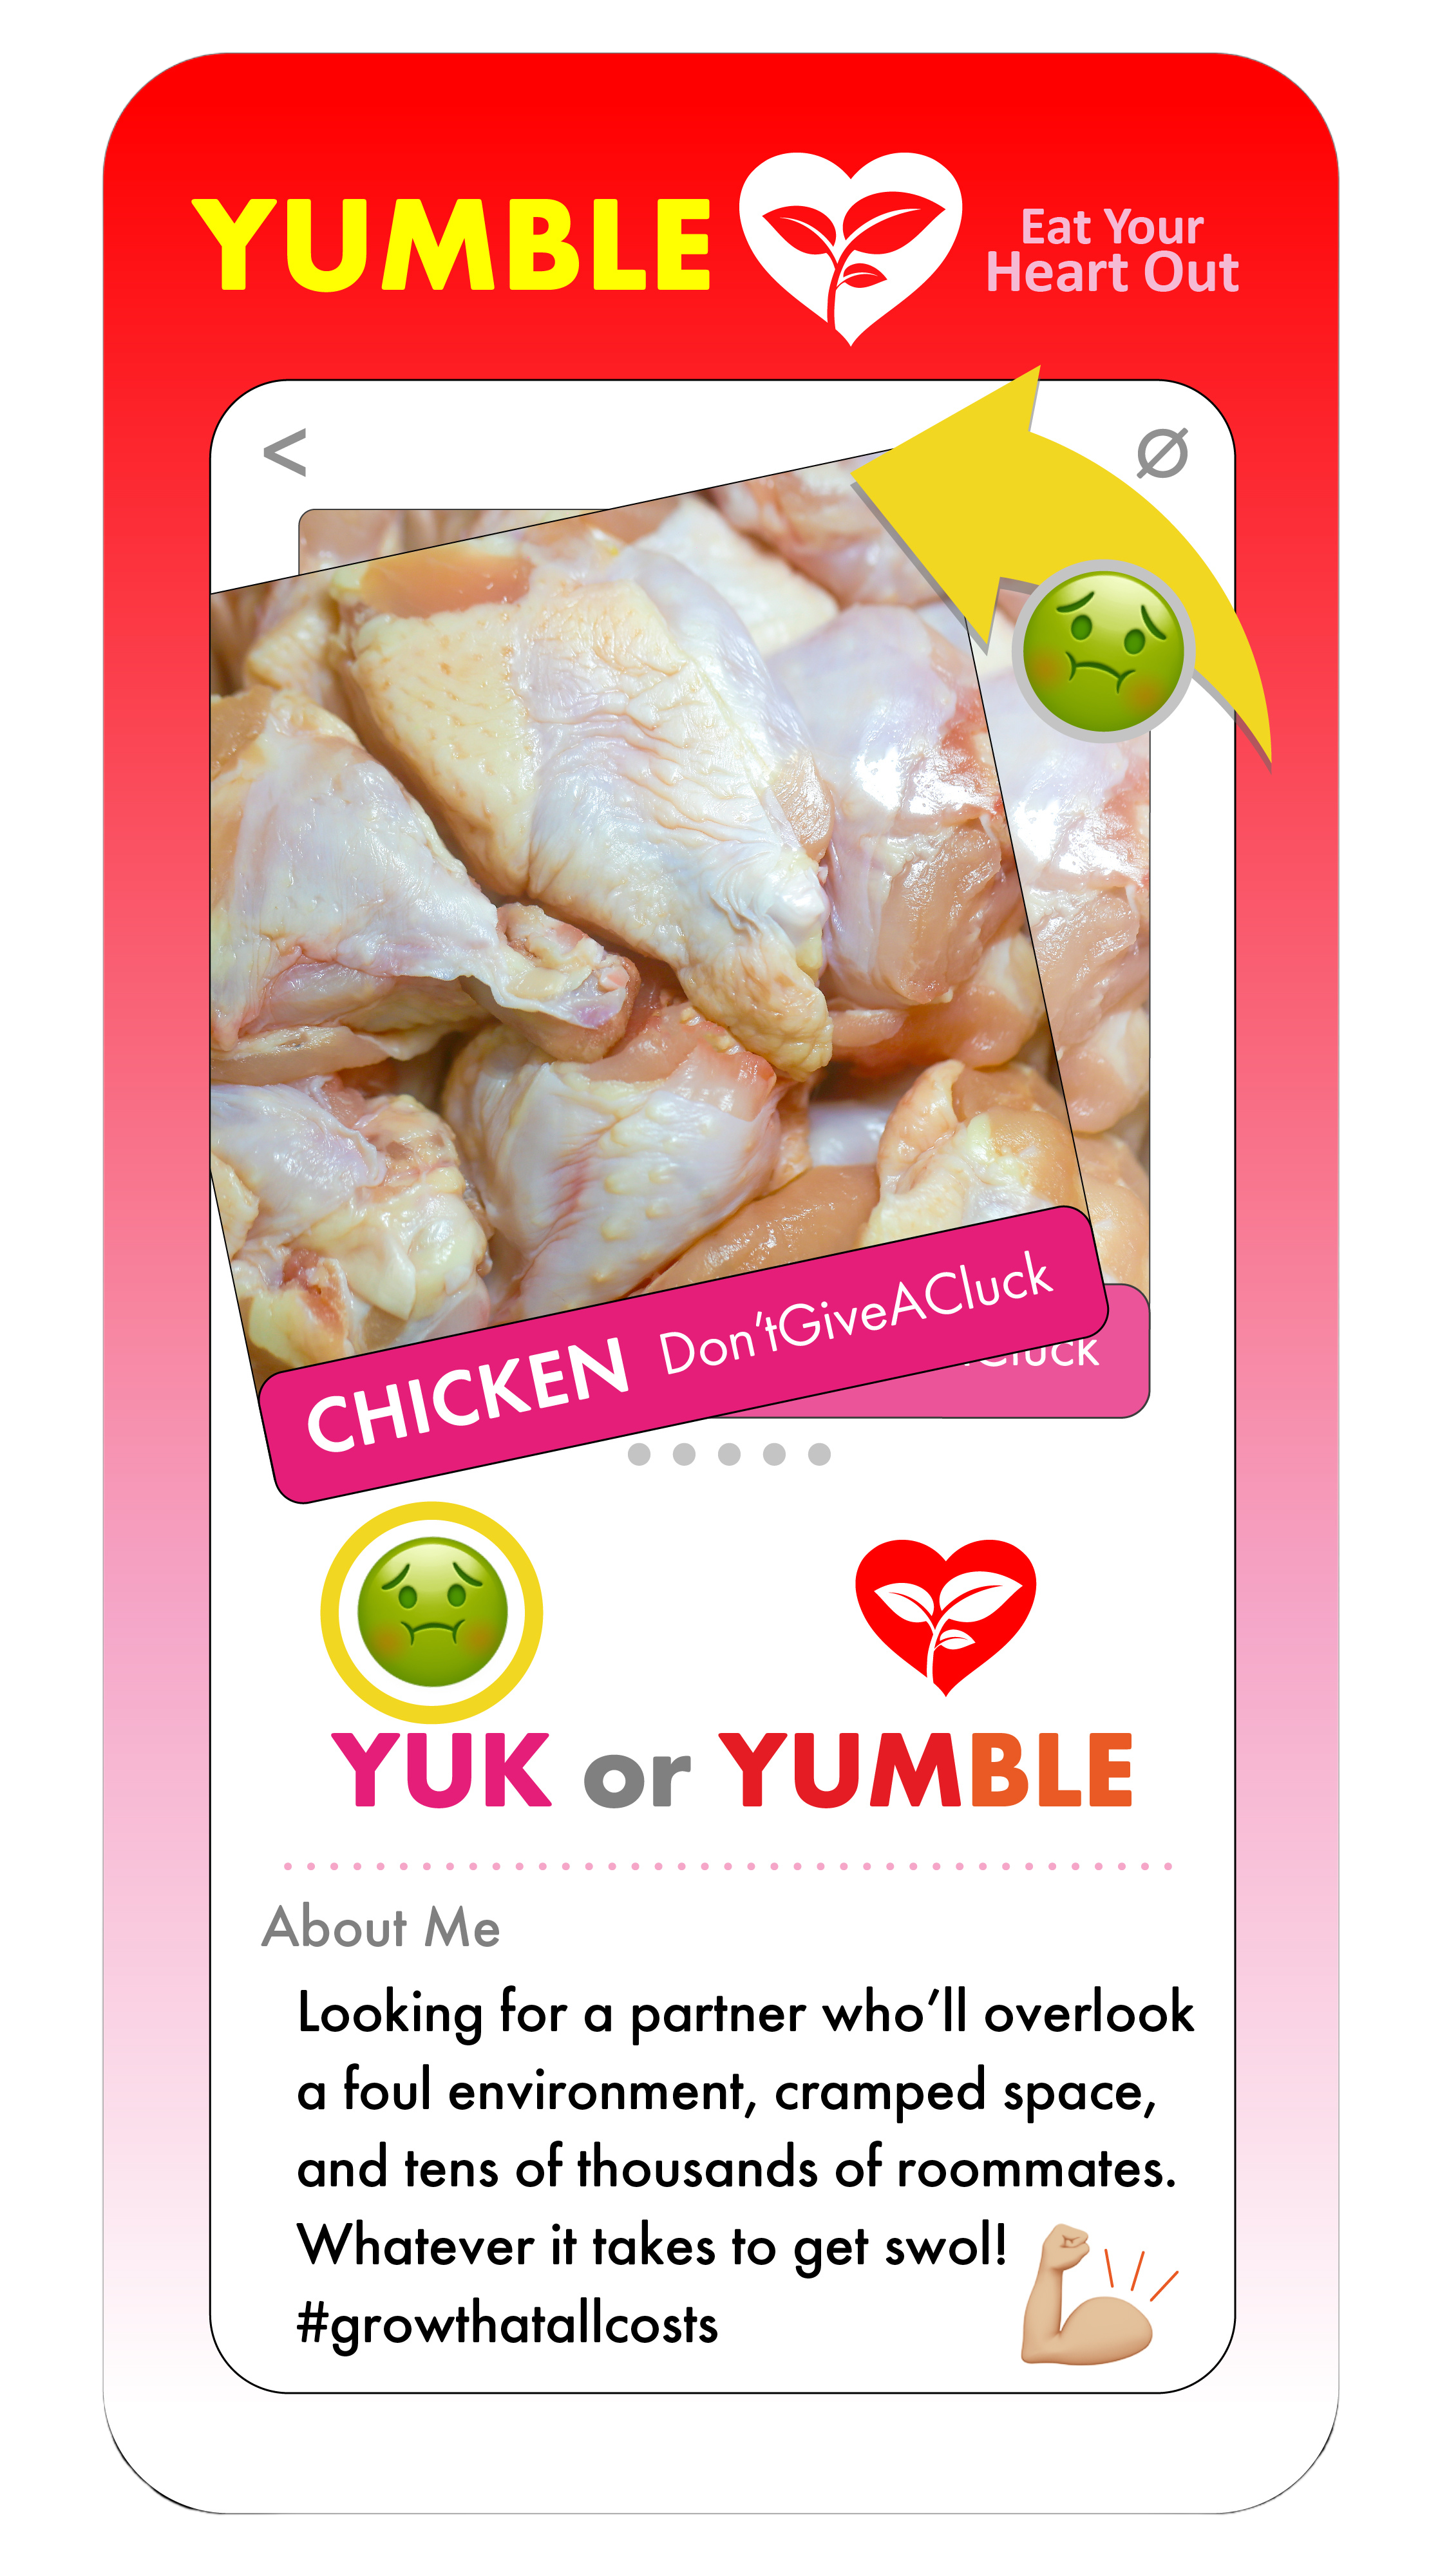  Chicken YUMBLE profile